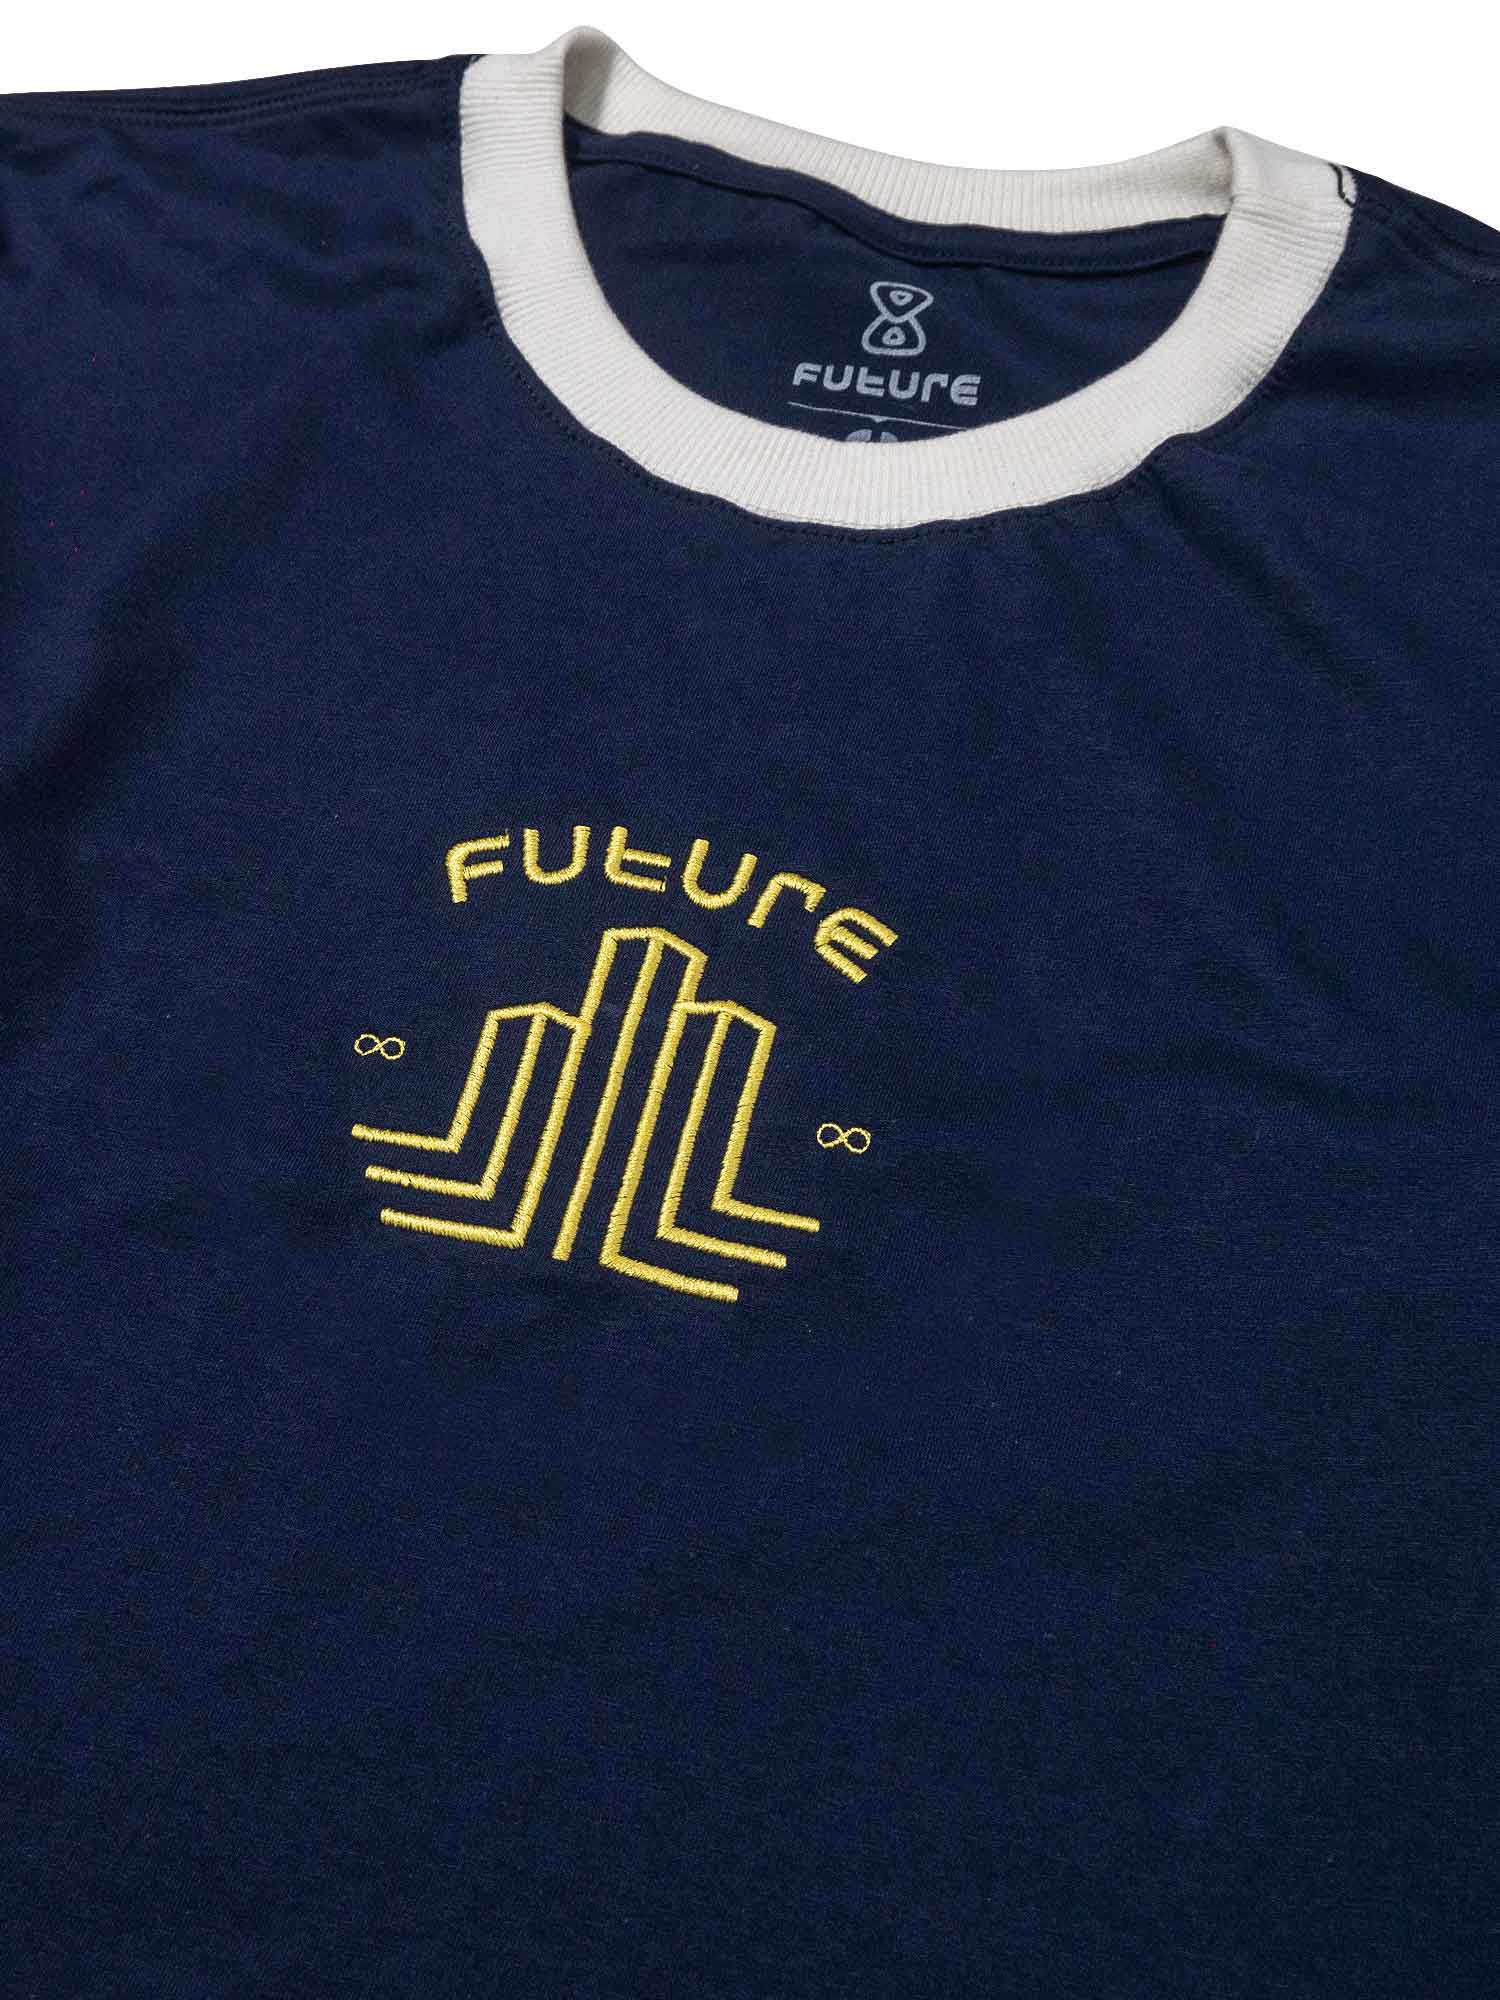    Camiseta-Future-City-Players-Azul-Marinho-Frente-Close